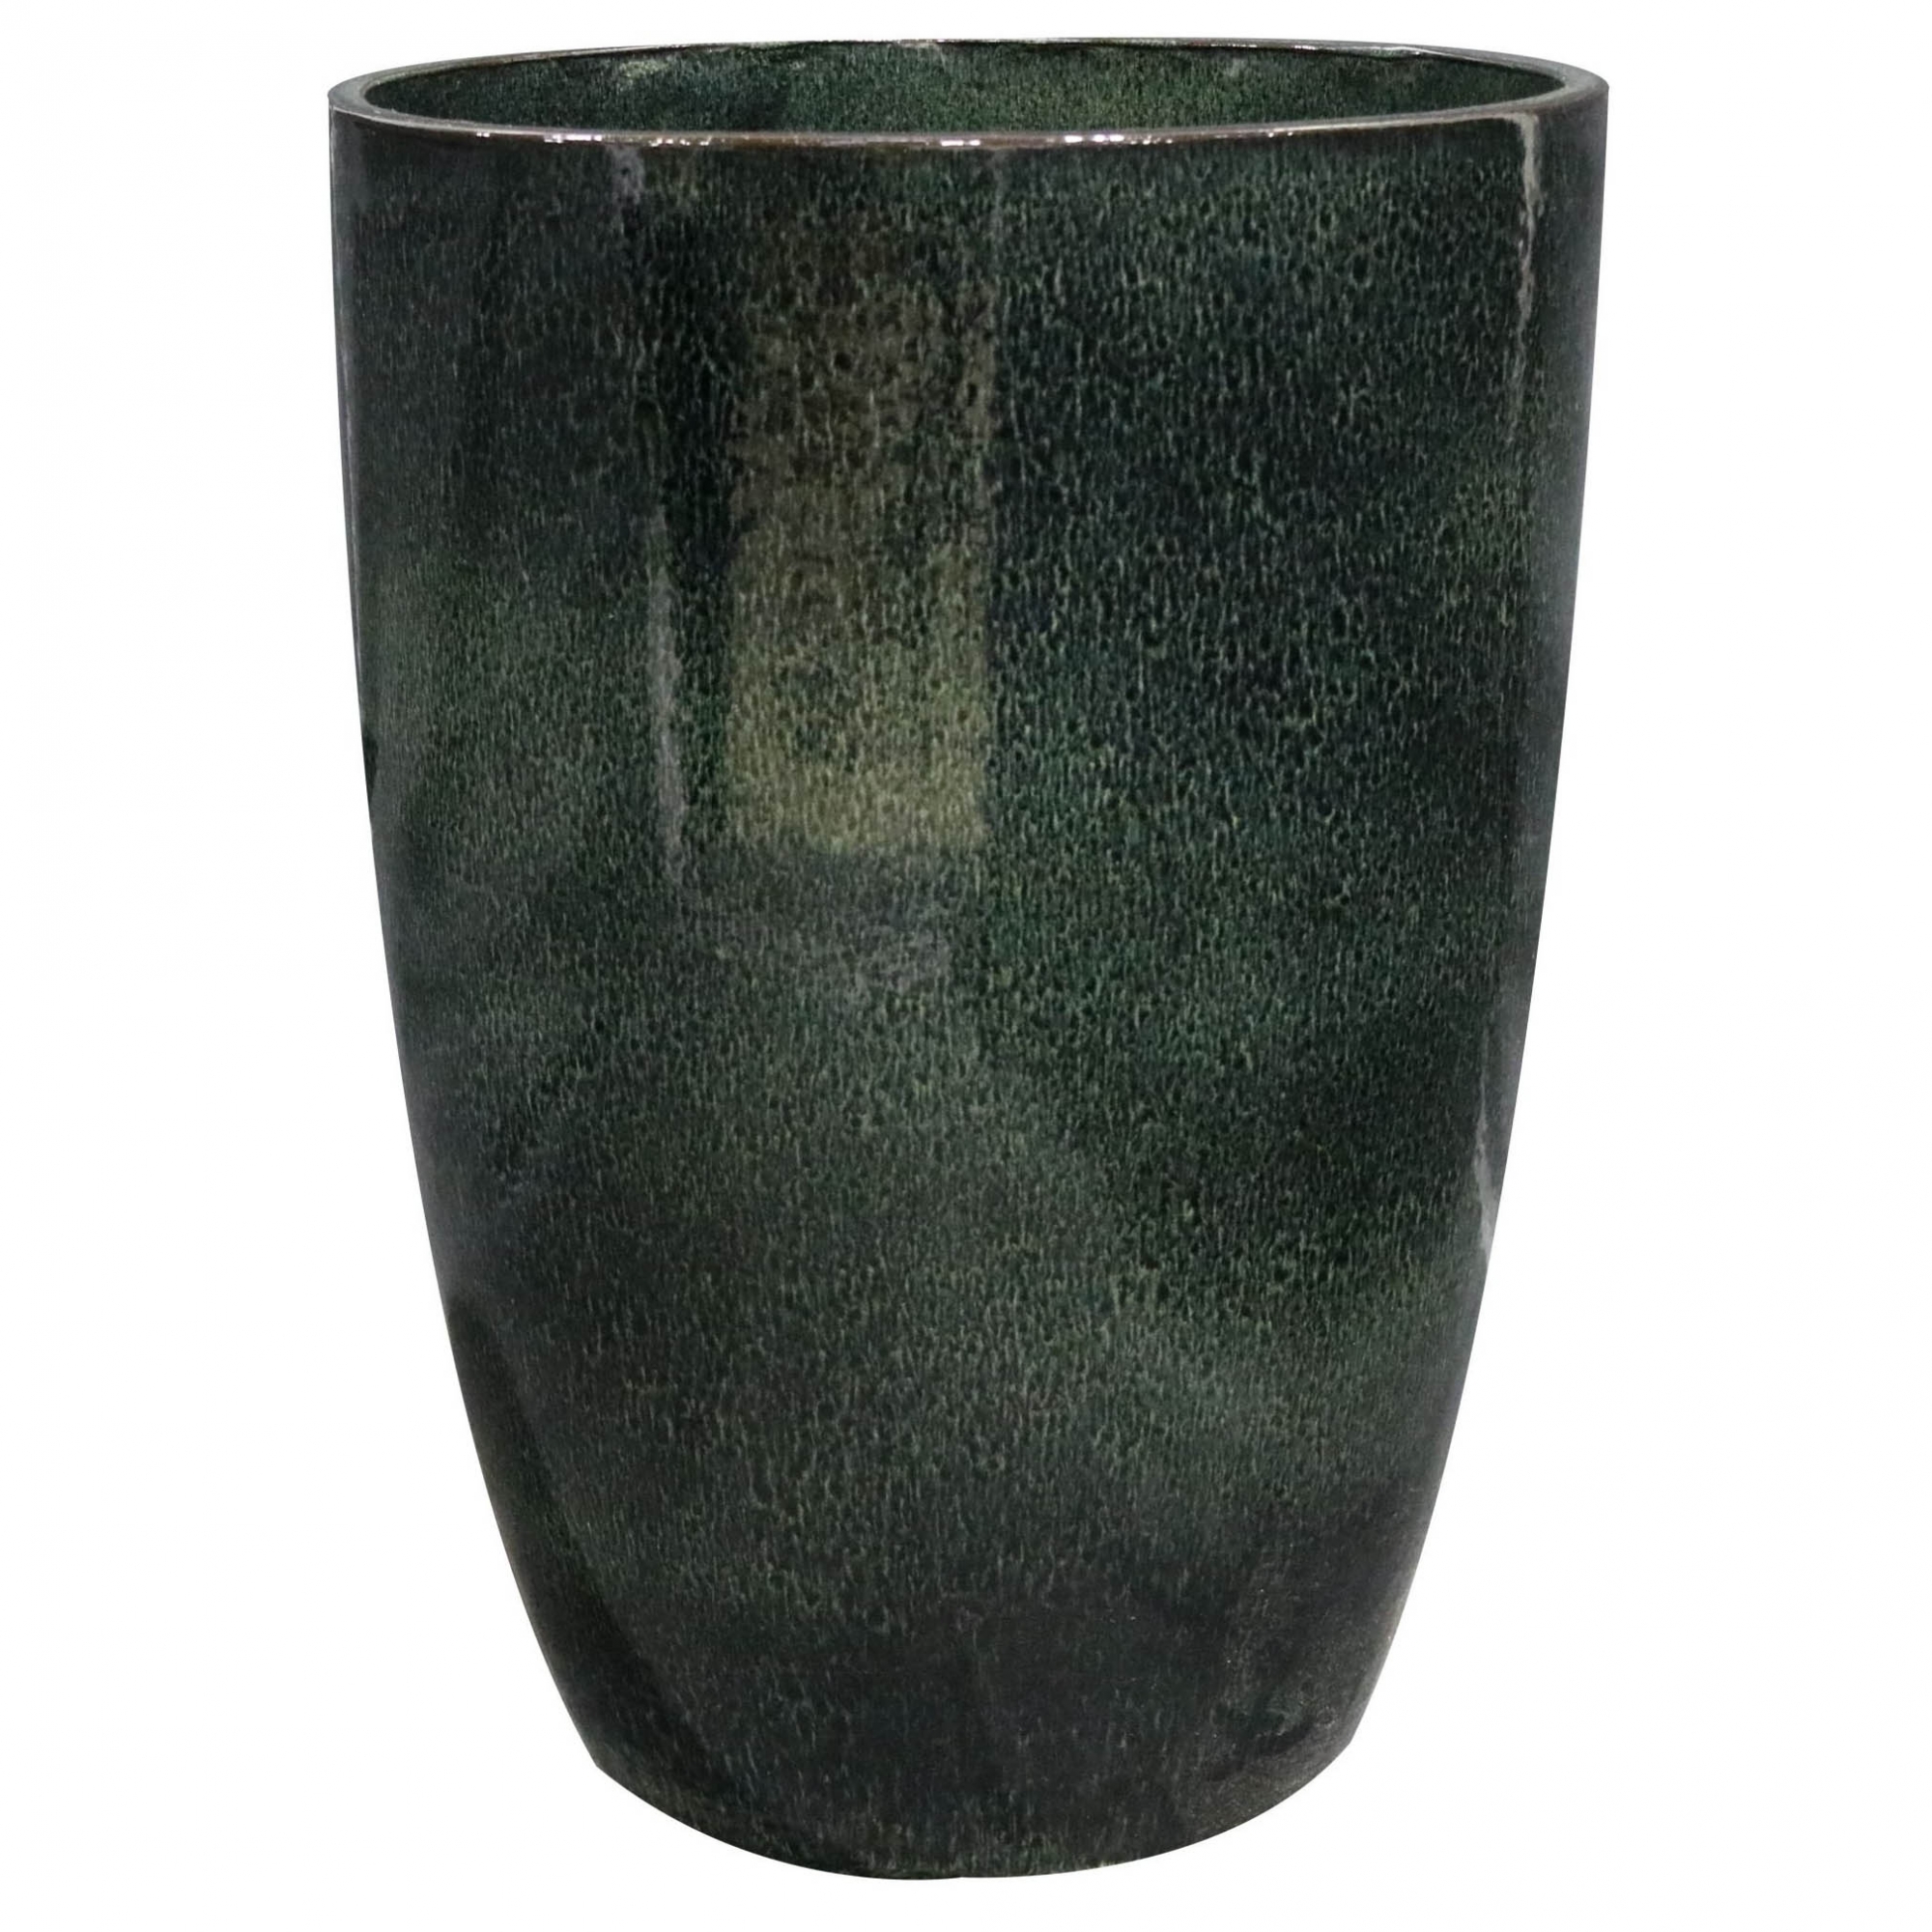 Vaso de Cerâmica Artesanal Preto Esverdeado Liv 35x51cm